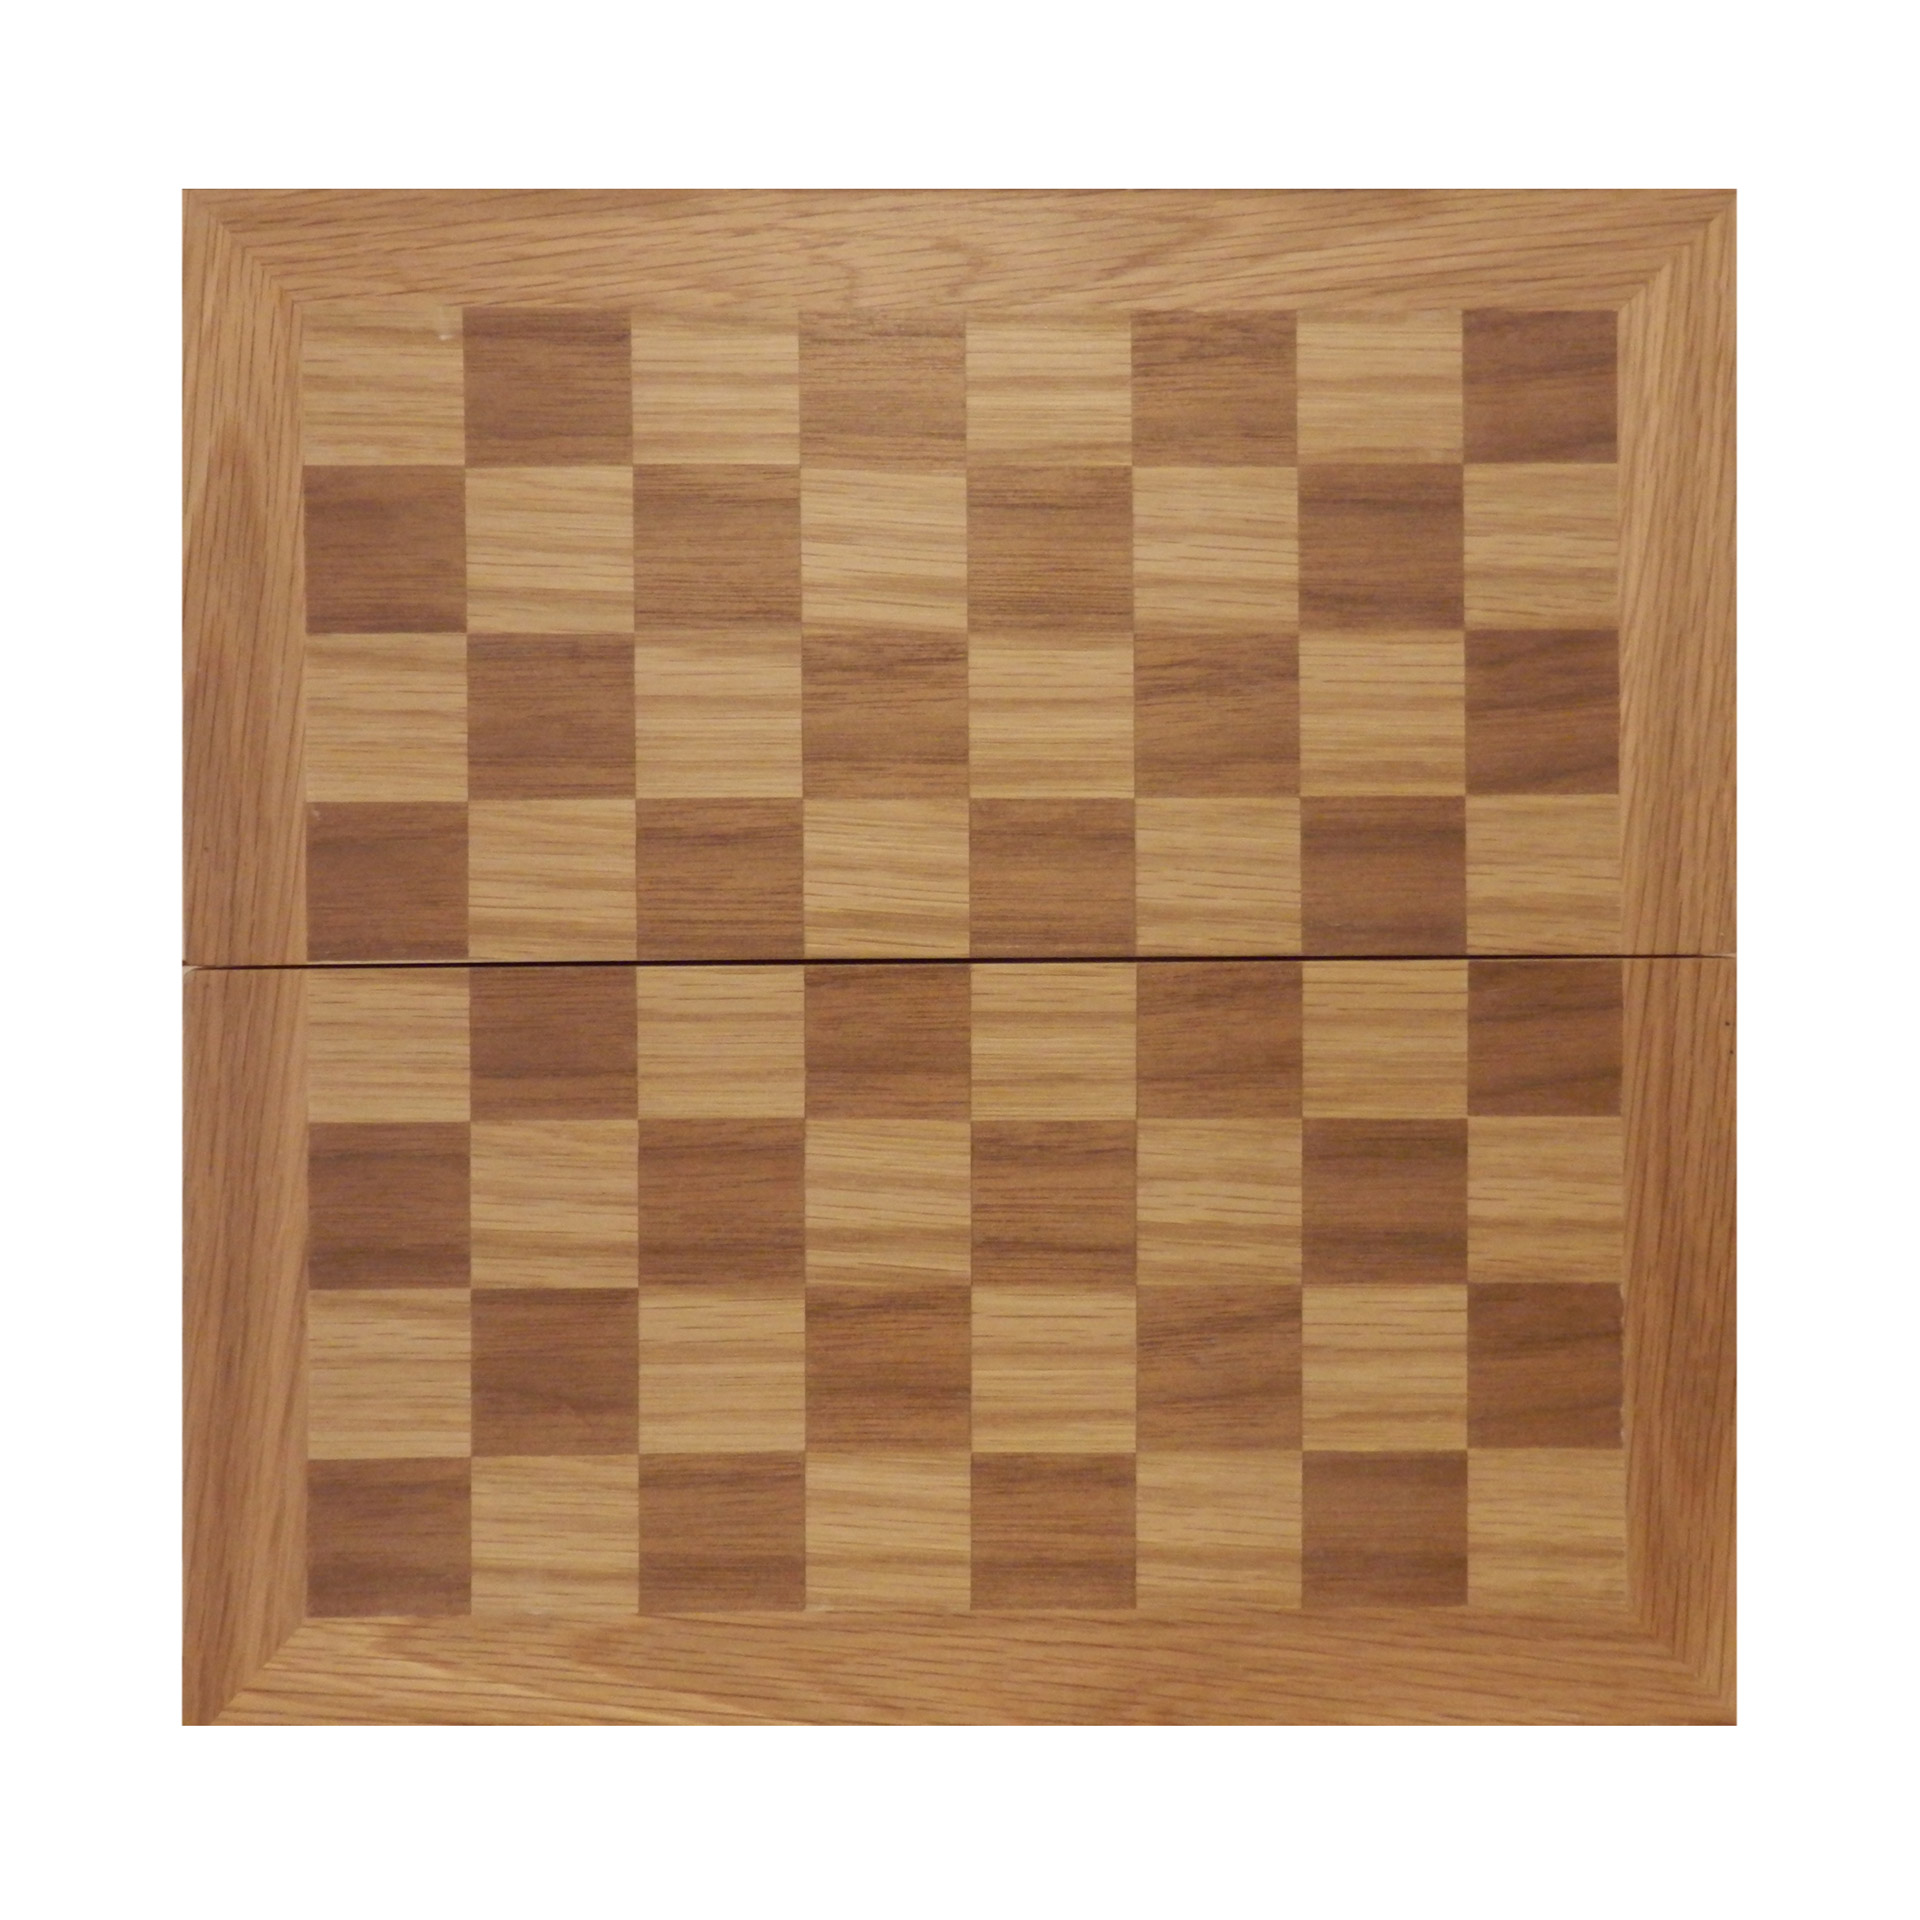 Варианты шахматной доски. Шахматная доска деревянная. Доска для шашек. Древьная шахматная доска. Доска для шахмат и шашек.